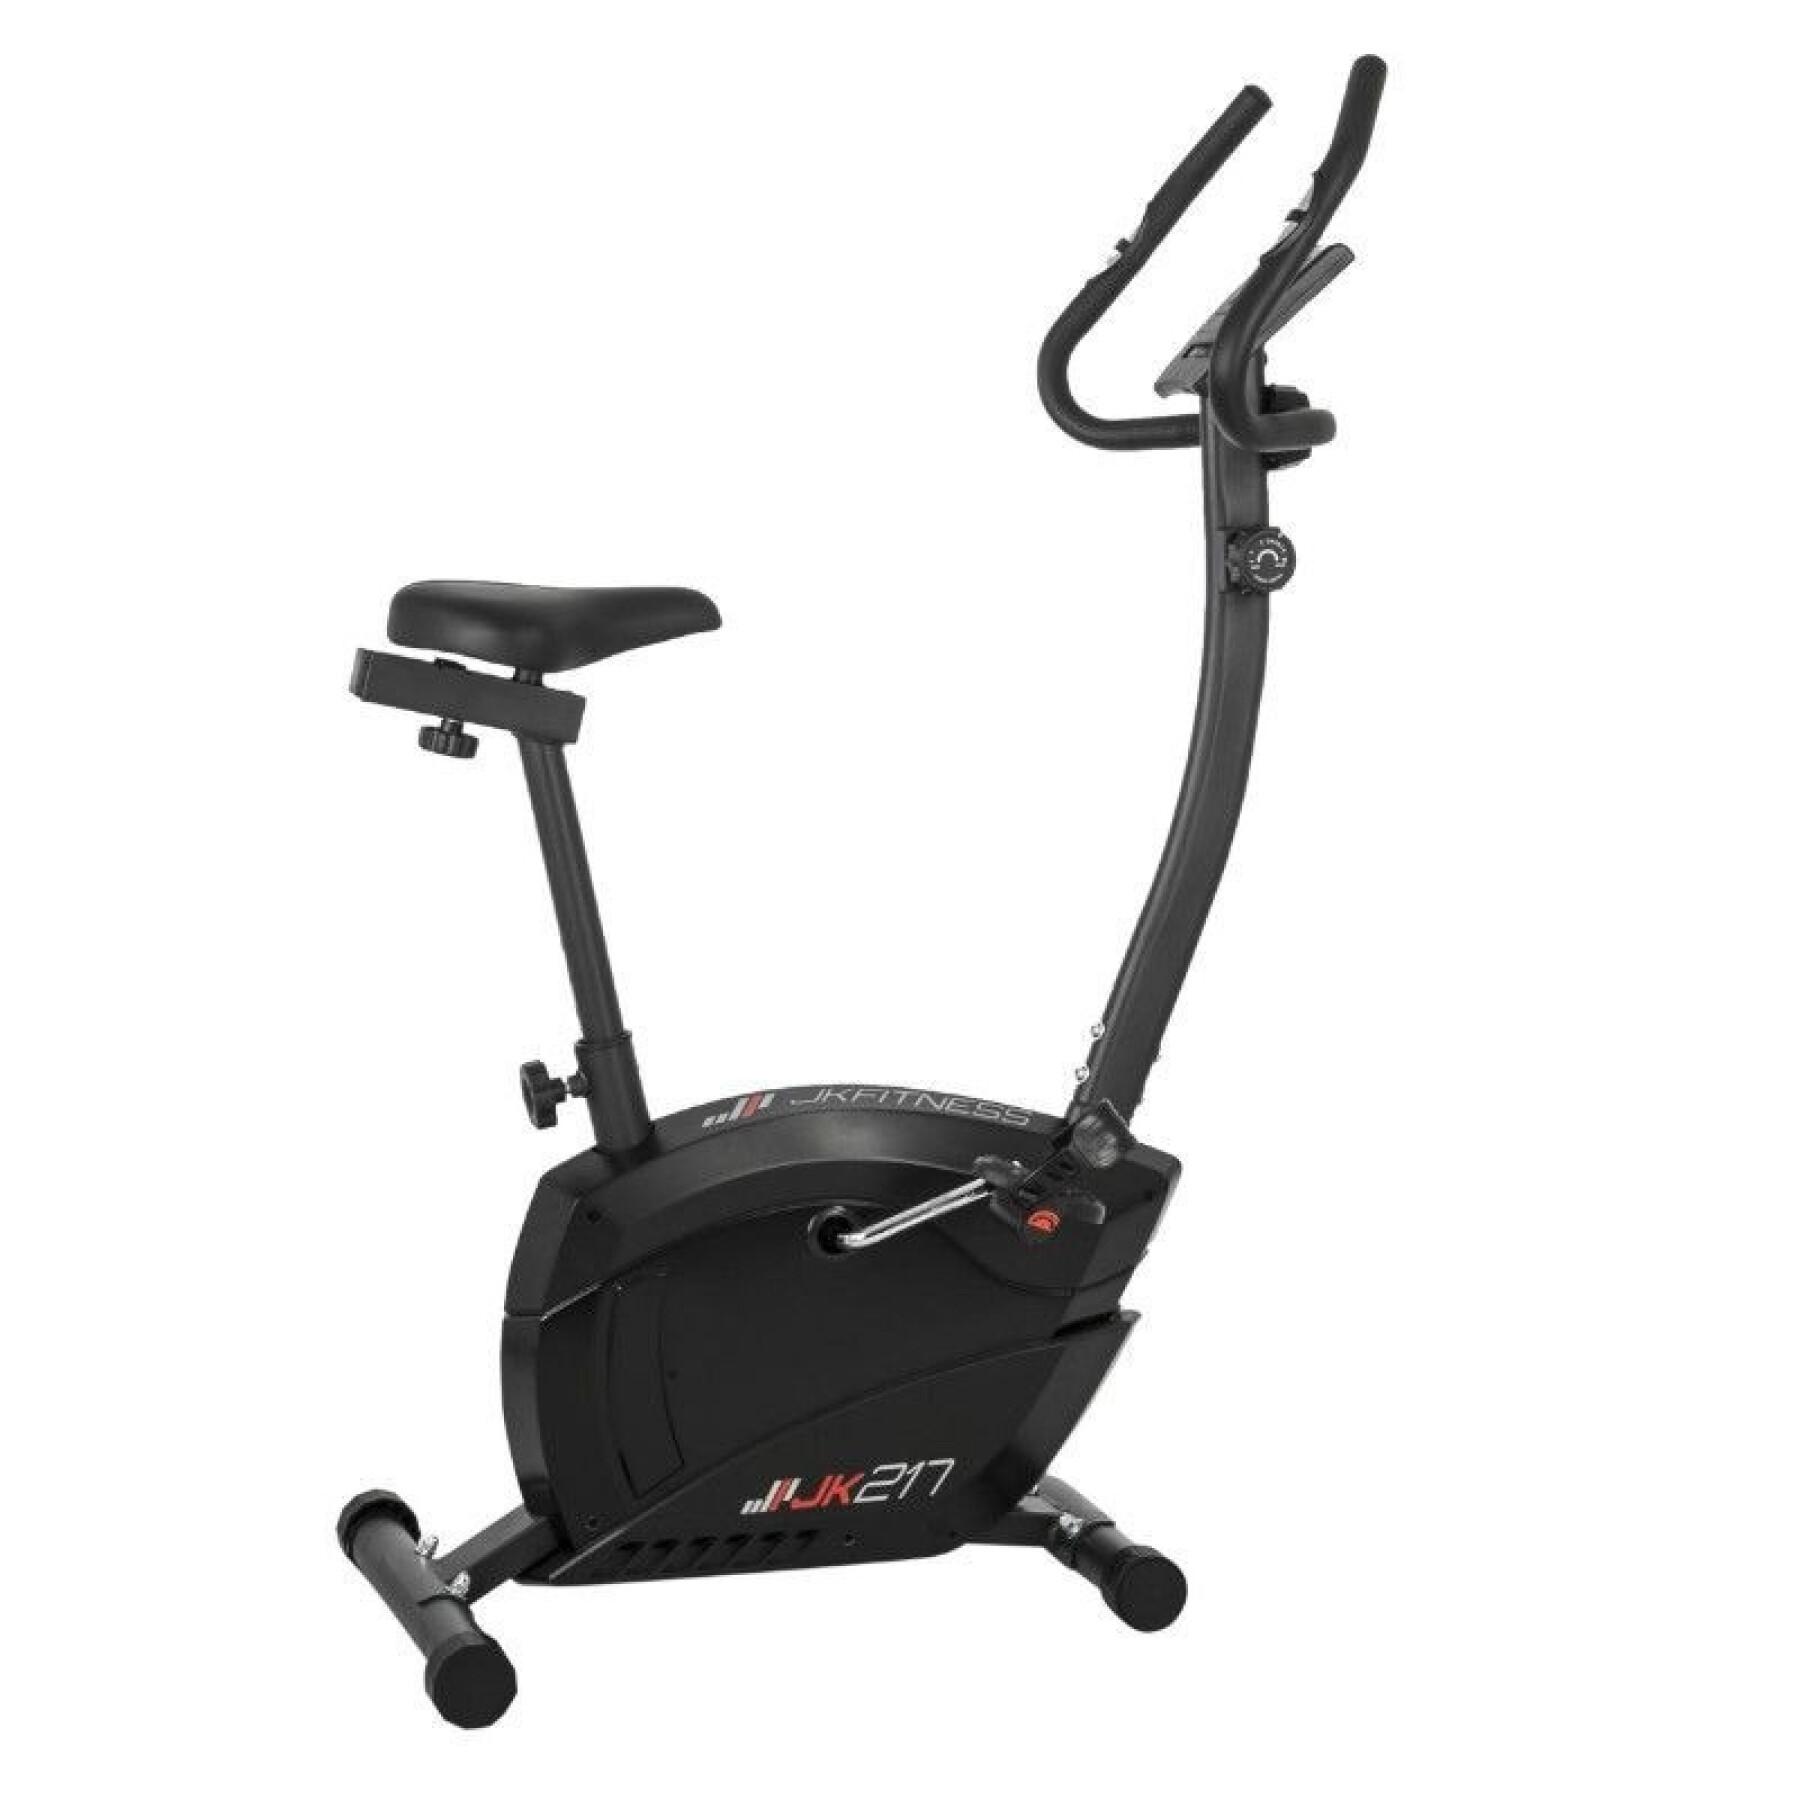 Home trainer fitness magnéticos com contador de calorias, velocidade, distância parcial e total Jk Fitness 207